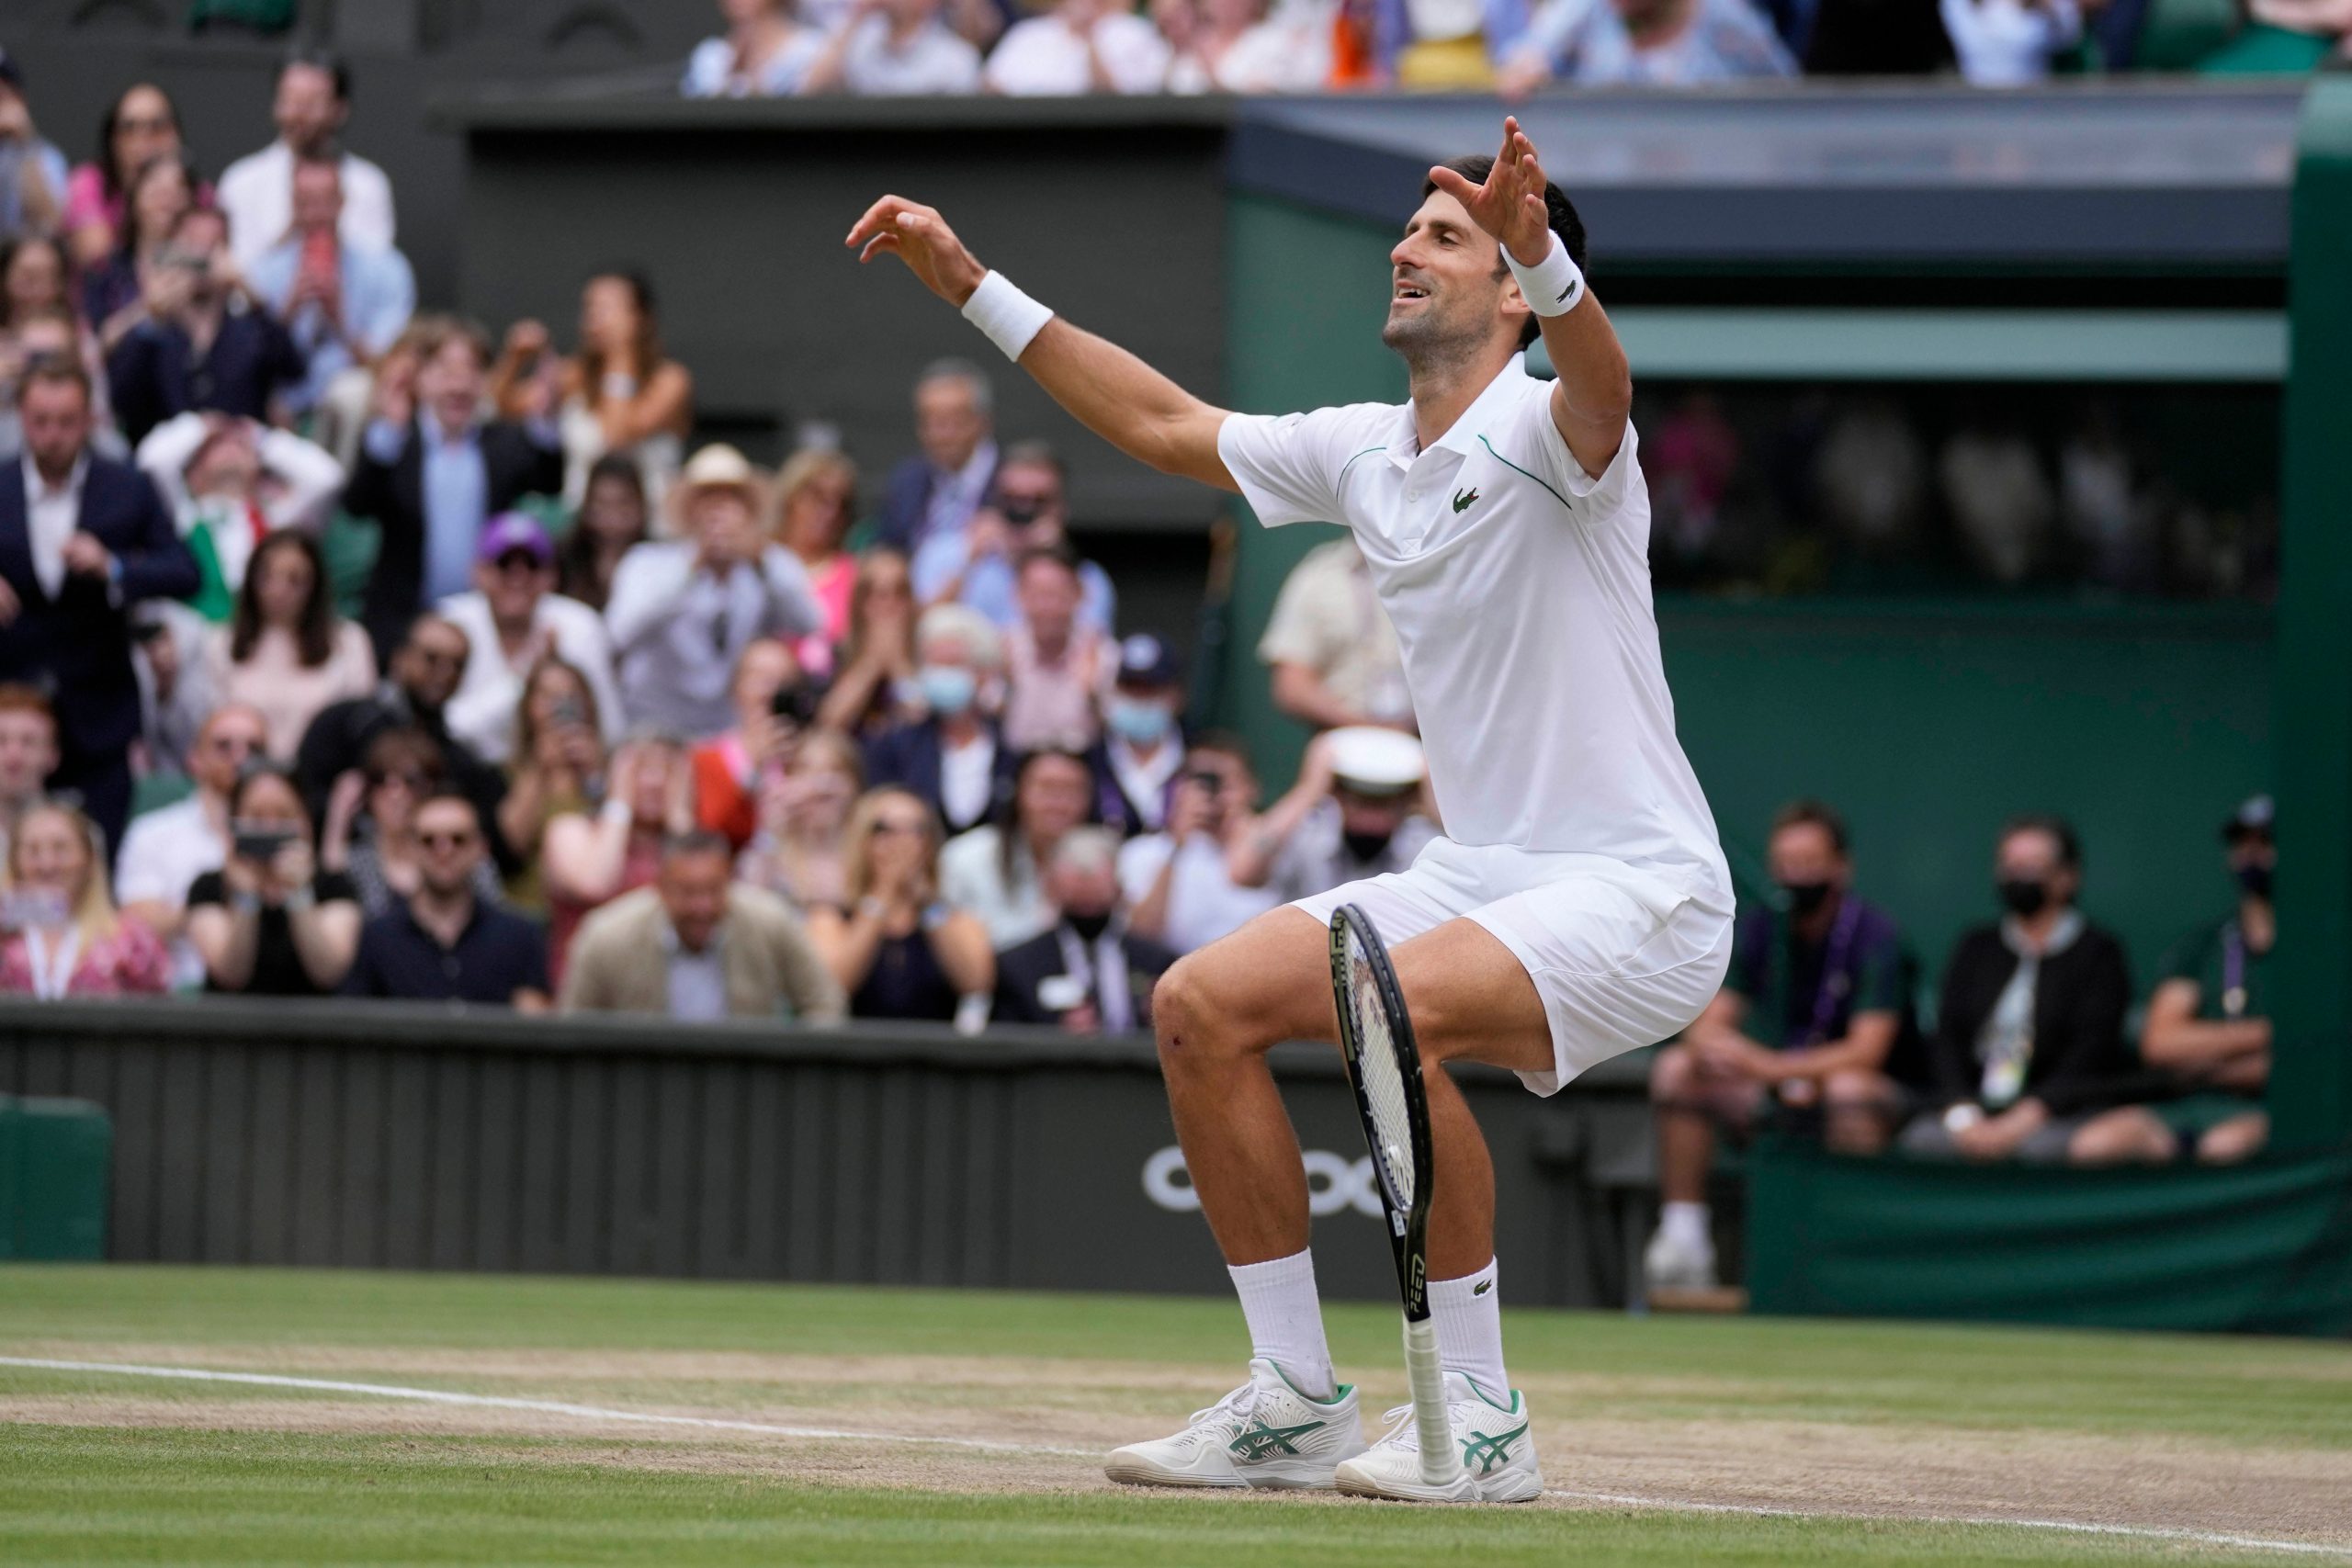 Novak Djokovic’s projected path to Wimbledon 2022 final